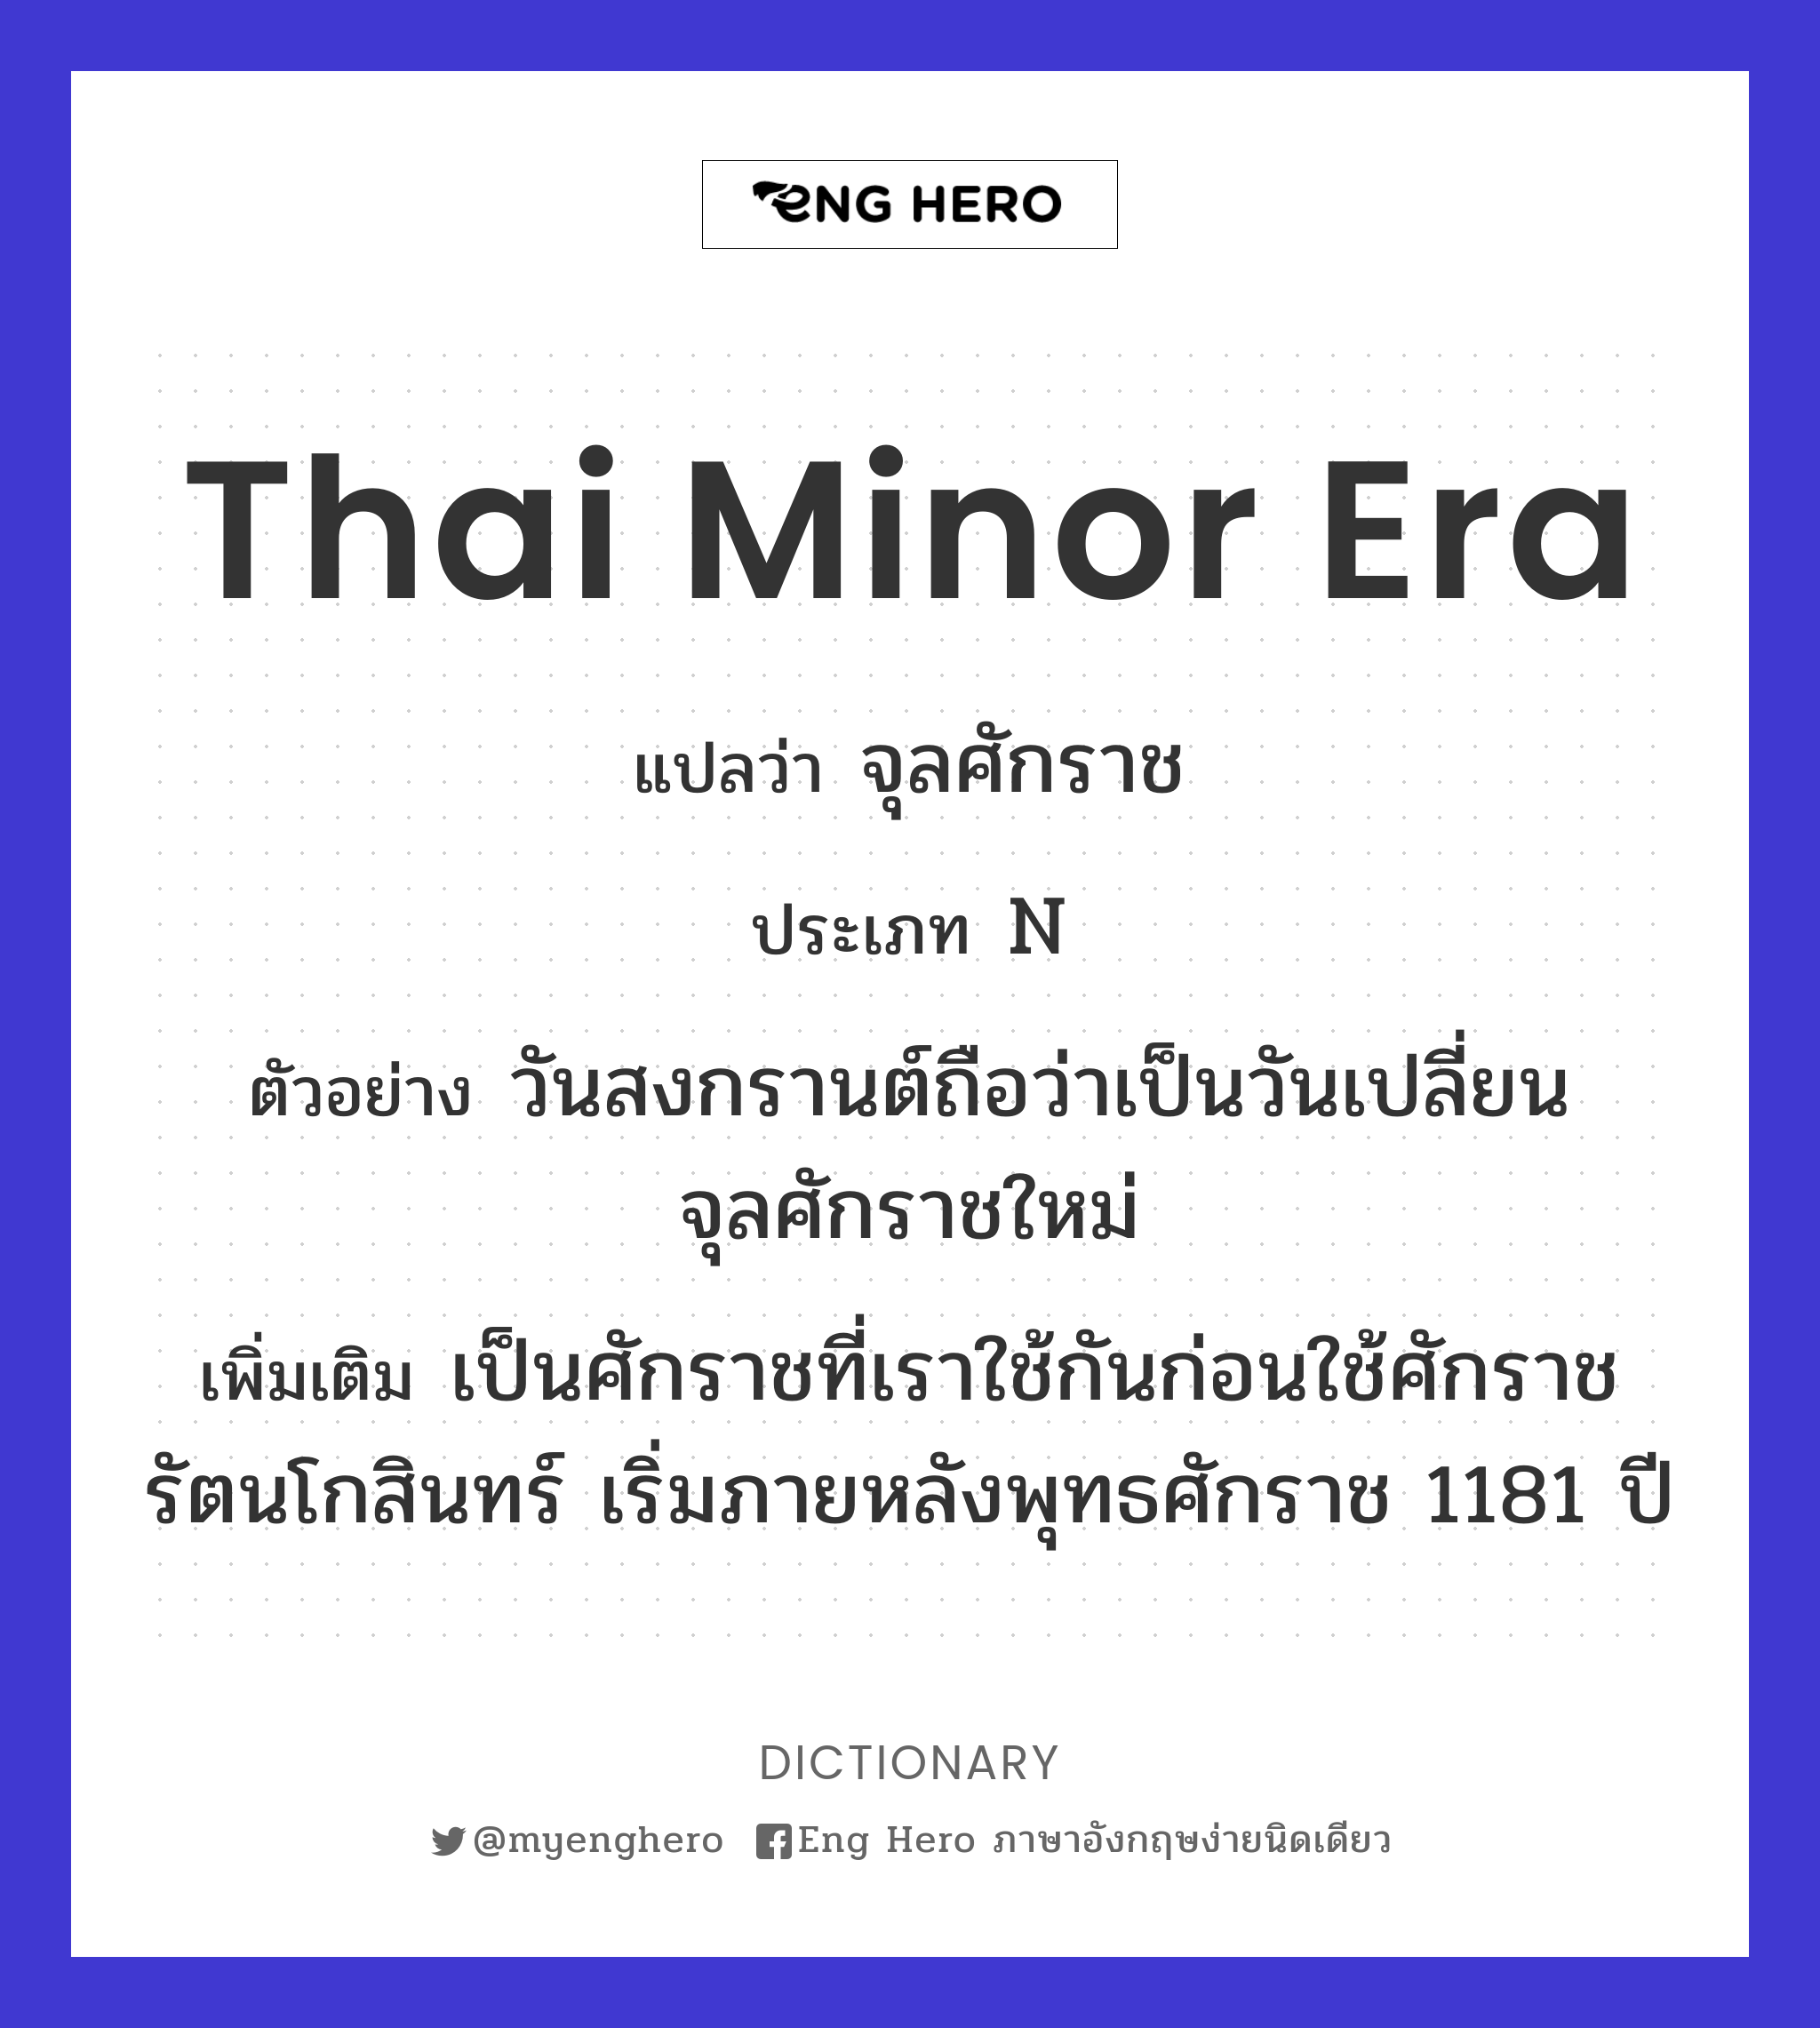 Thai minor era